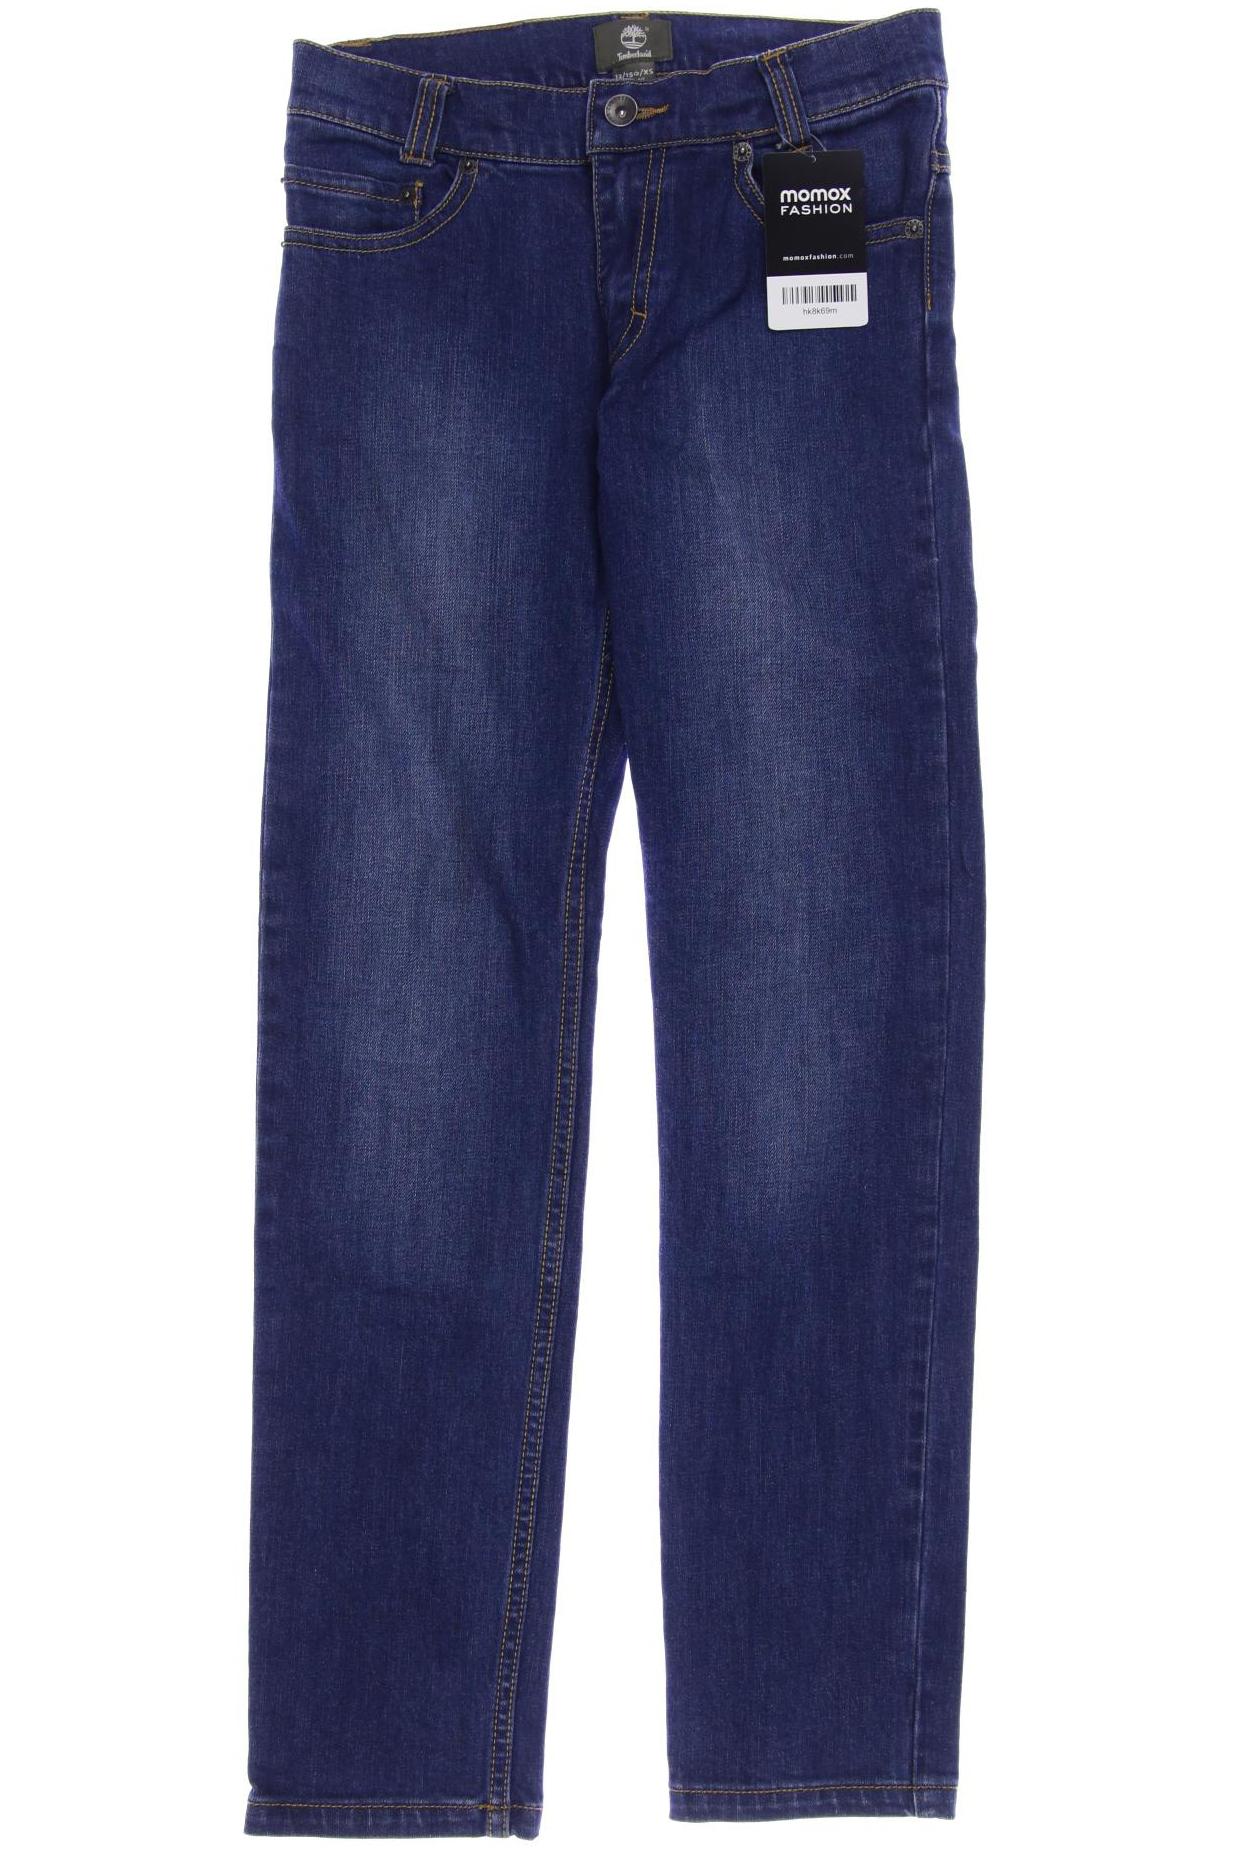 Timberland Damen Jeans, blau von Timberland